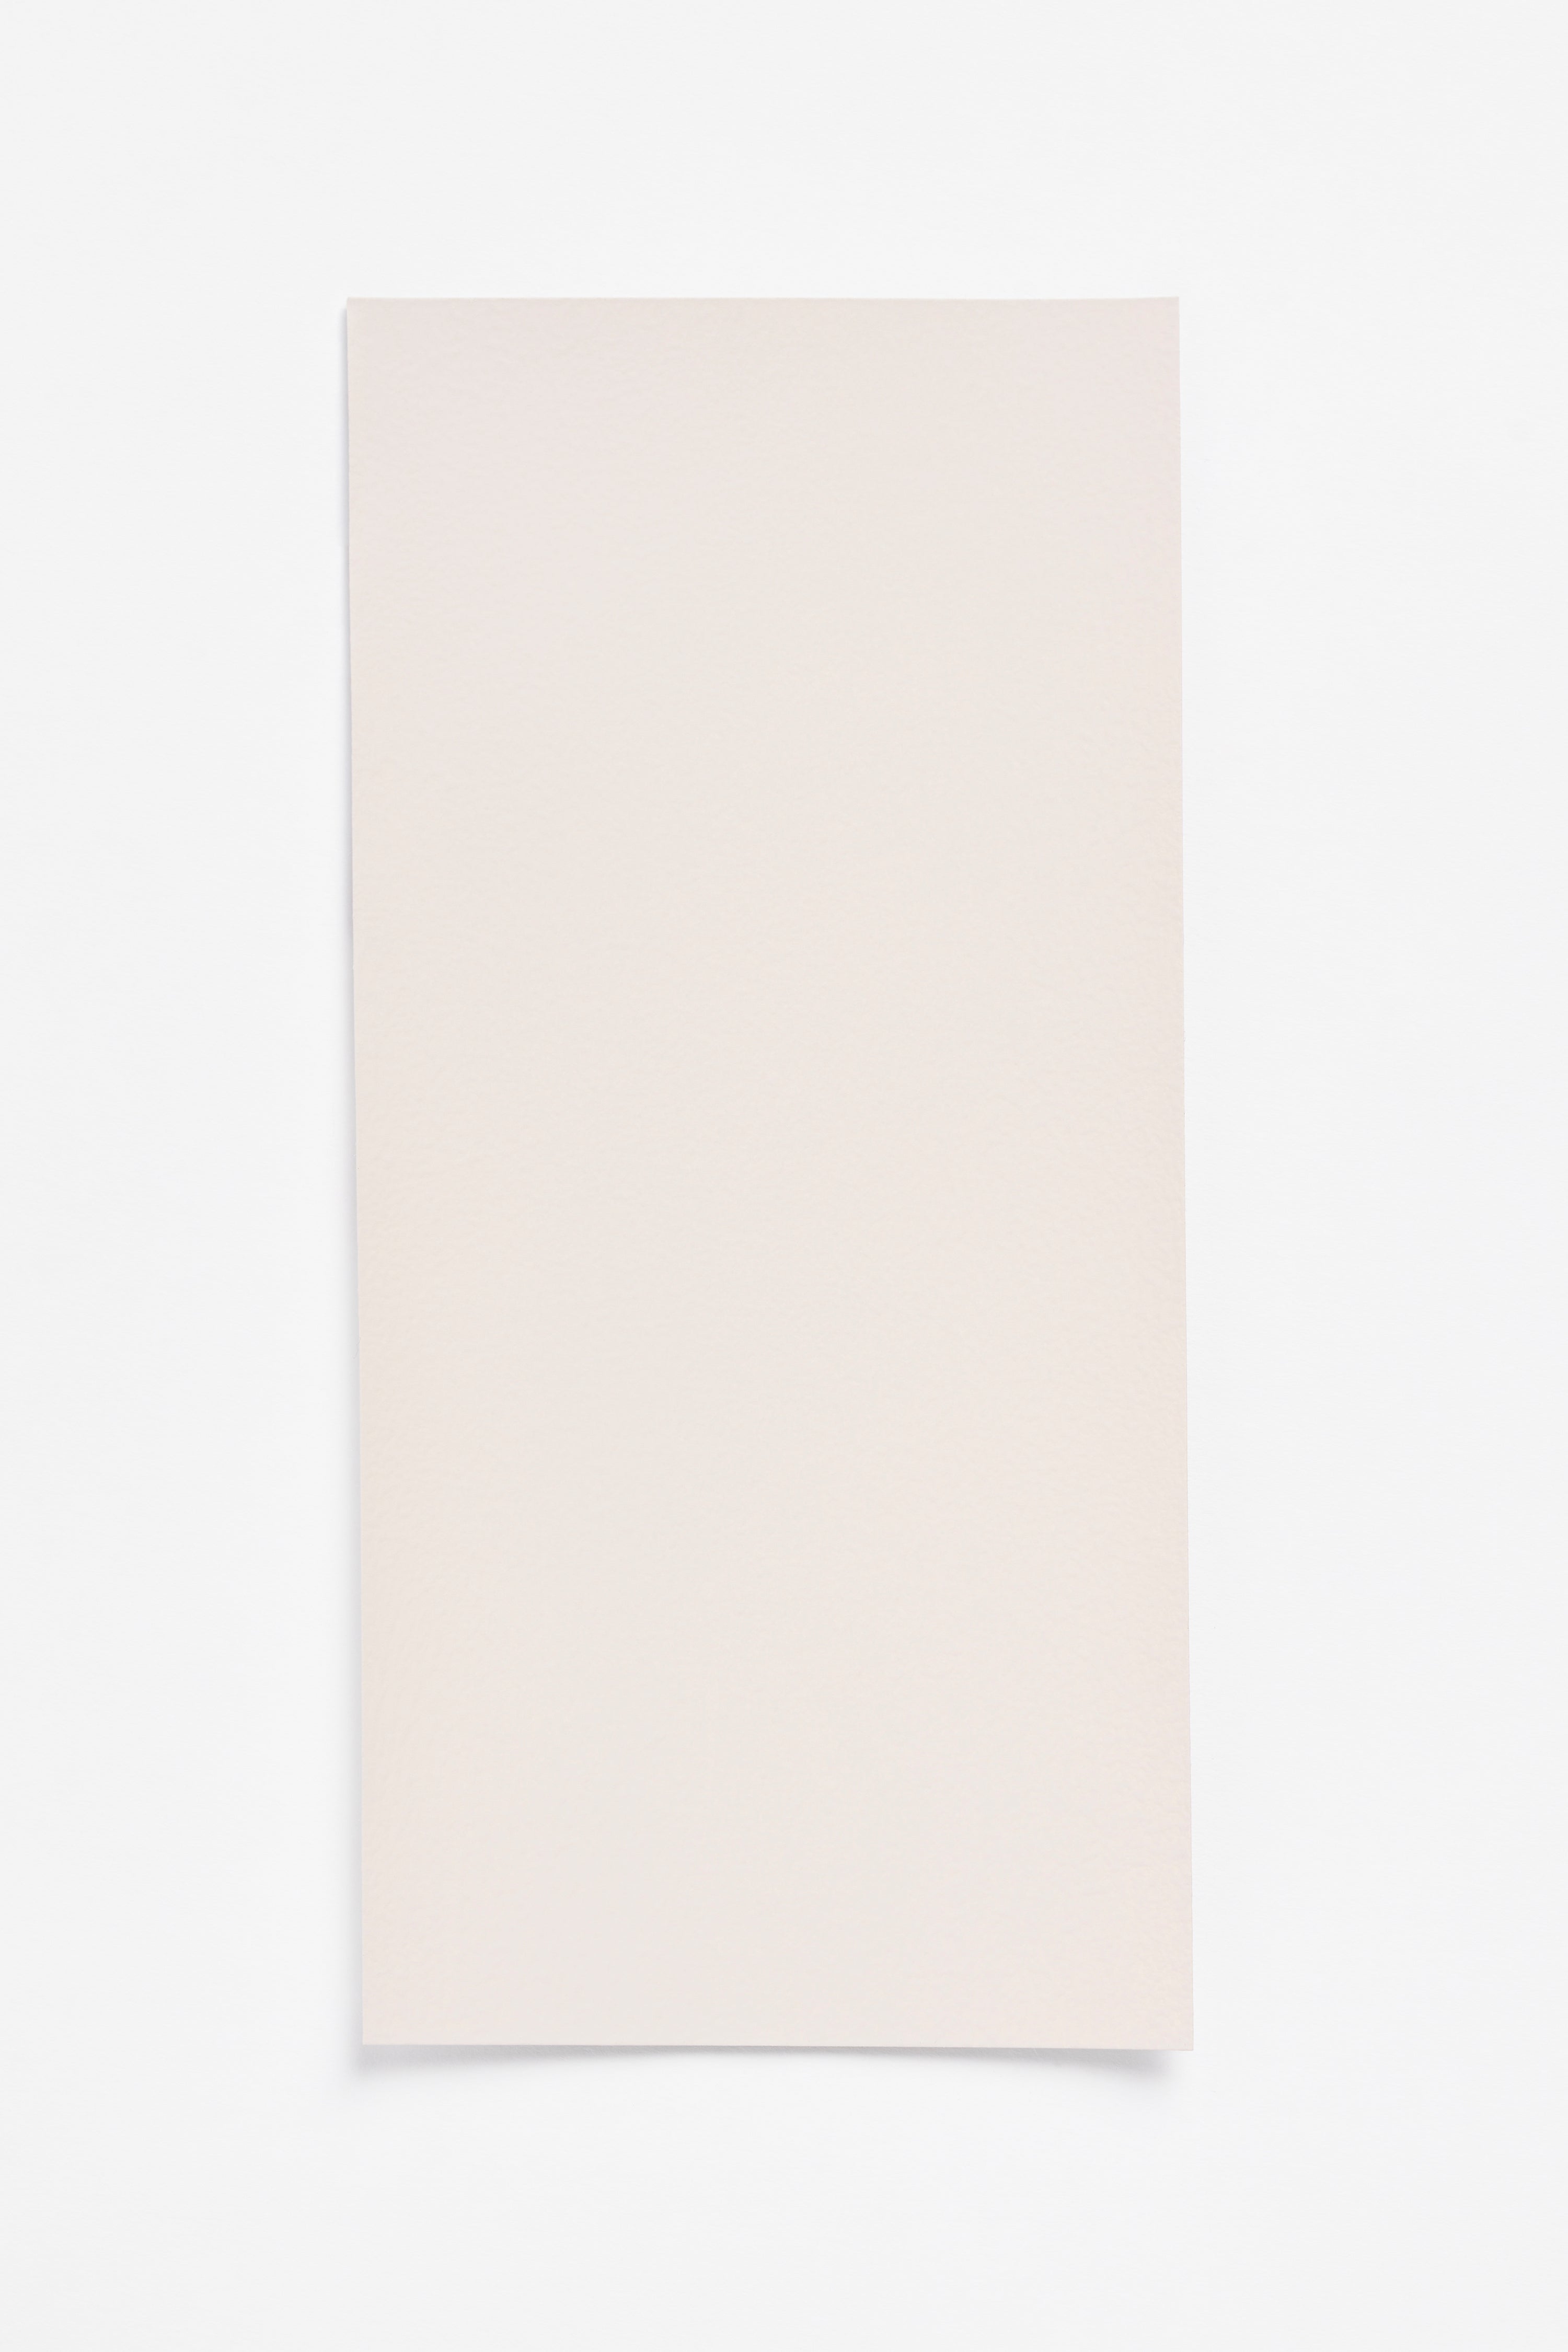 Powder — a paint colour developed by Yvonne Koné for Blēo